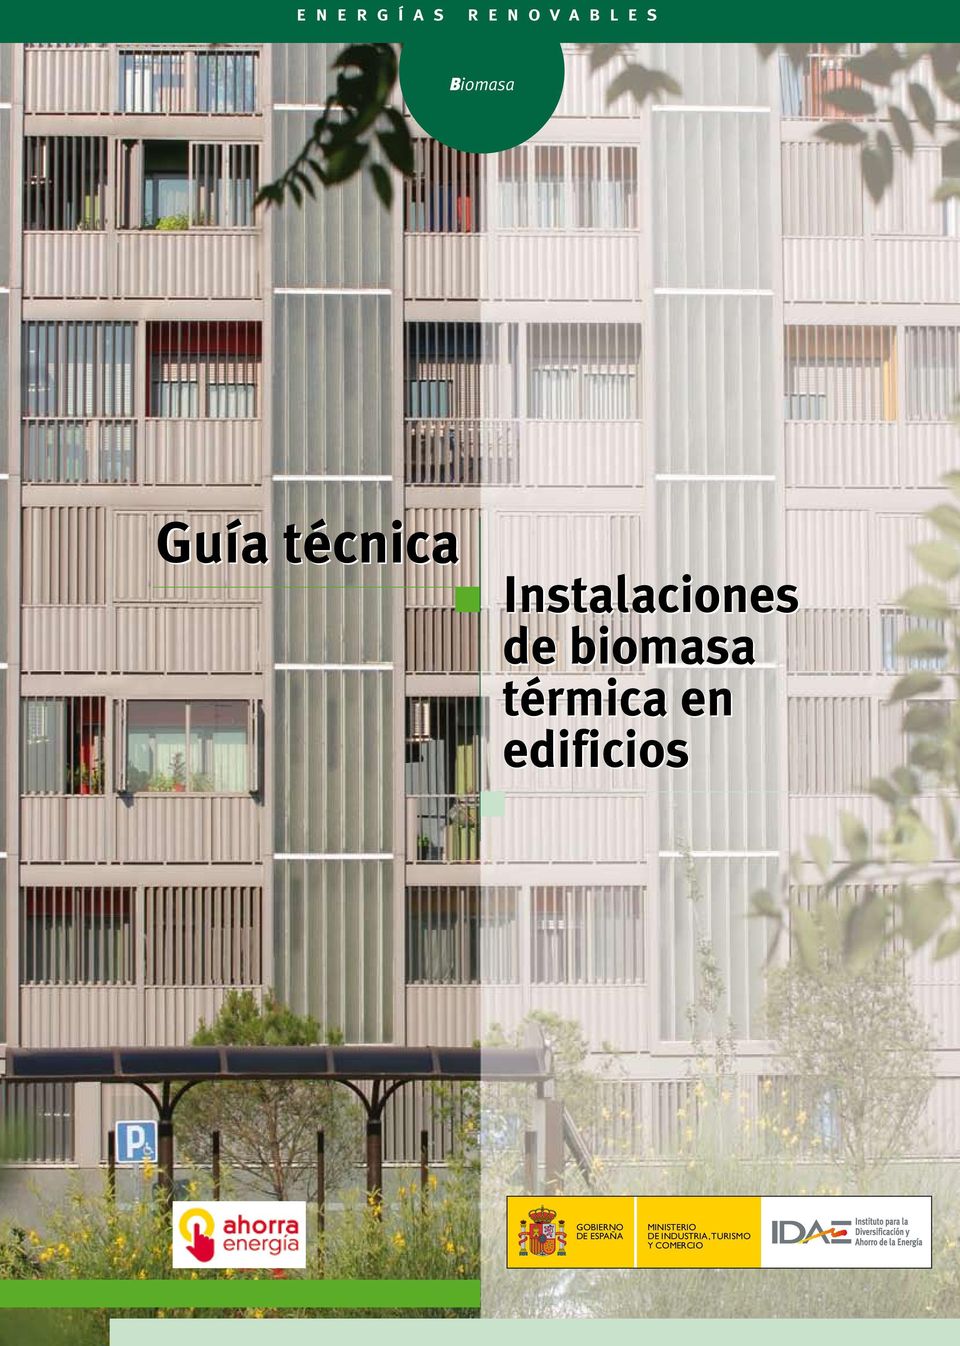 biomasa térmica en edificios GOBIERNO DE